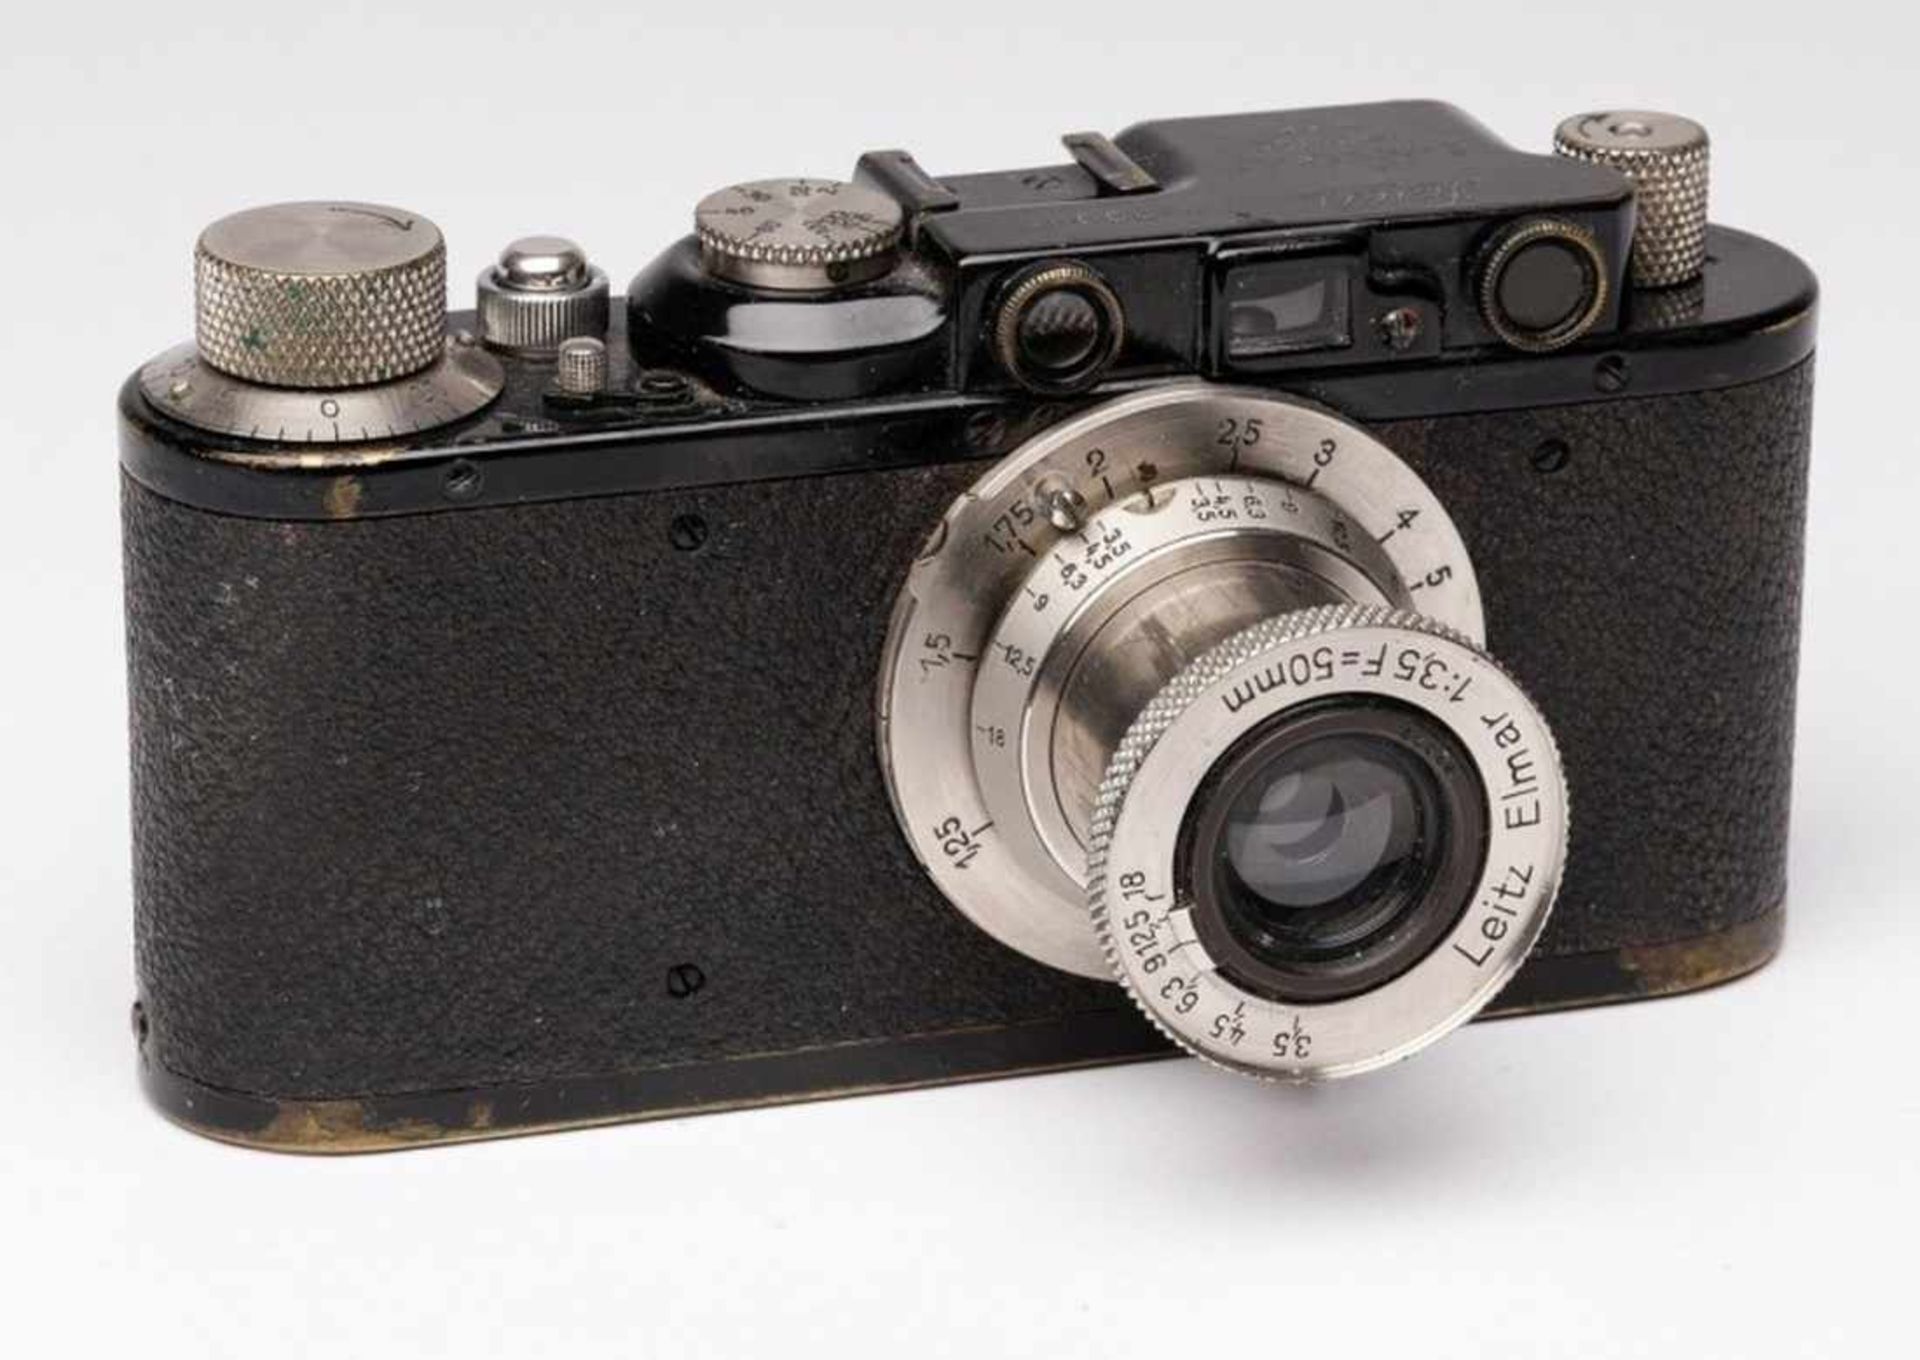 Kamera "Leica", Wetzlar um 1940.Seriennr.: "79008", bez. "Leica, Ernst Leitz Wetzlar, D.R.P.".